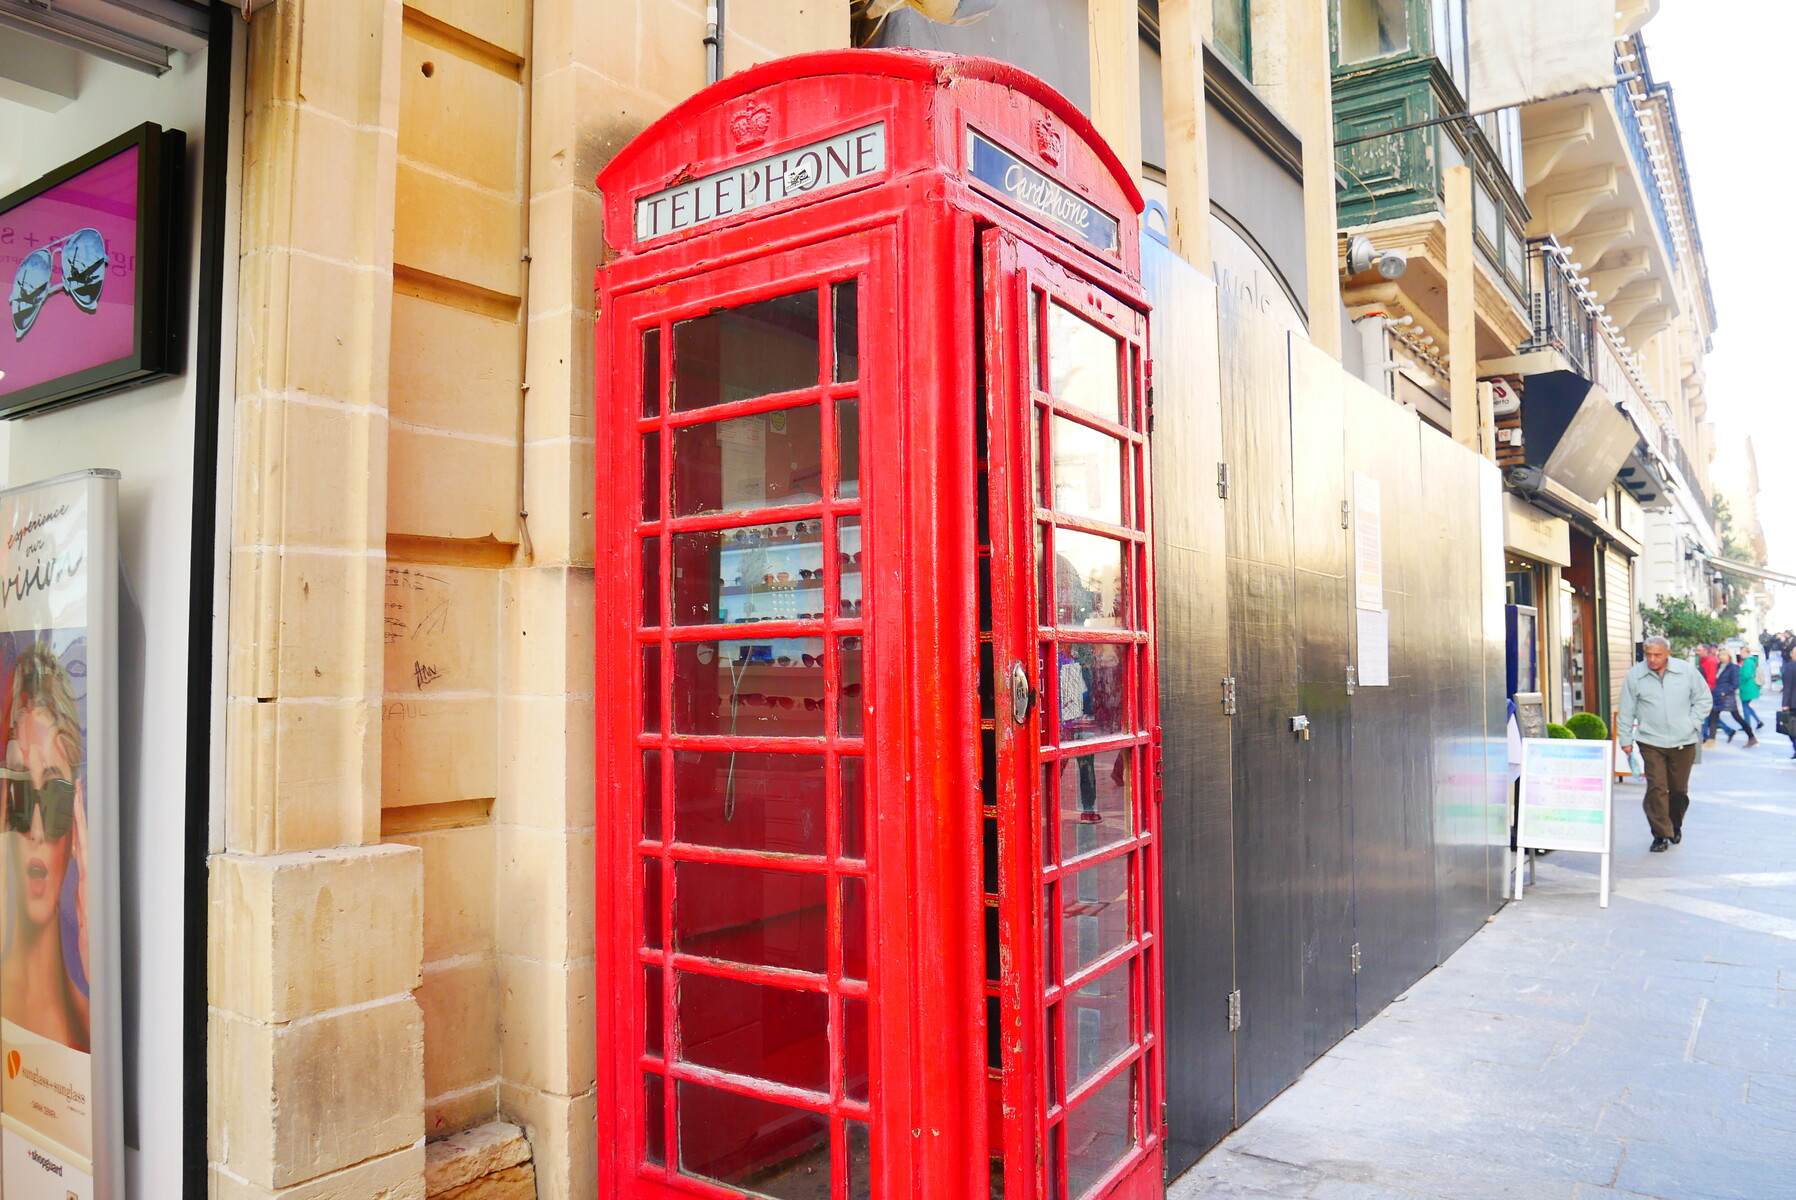 【マルタ】バレッタにある赤い電話ボックスがかわいい！インスタ映え間違いなし！ : 「マルタナビ」社会人からのマルタ留学ブログ